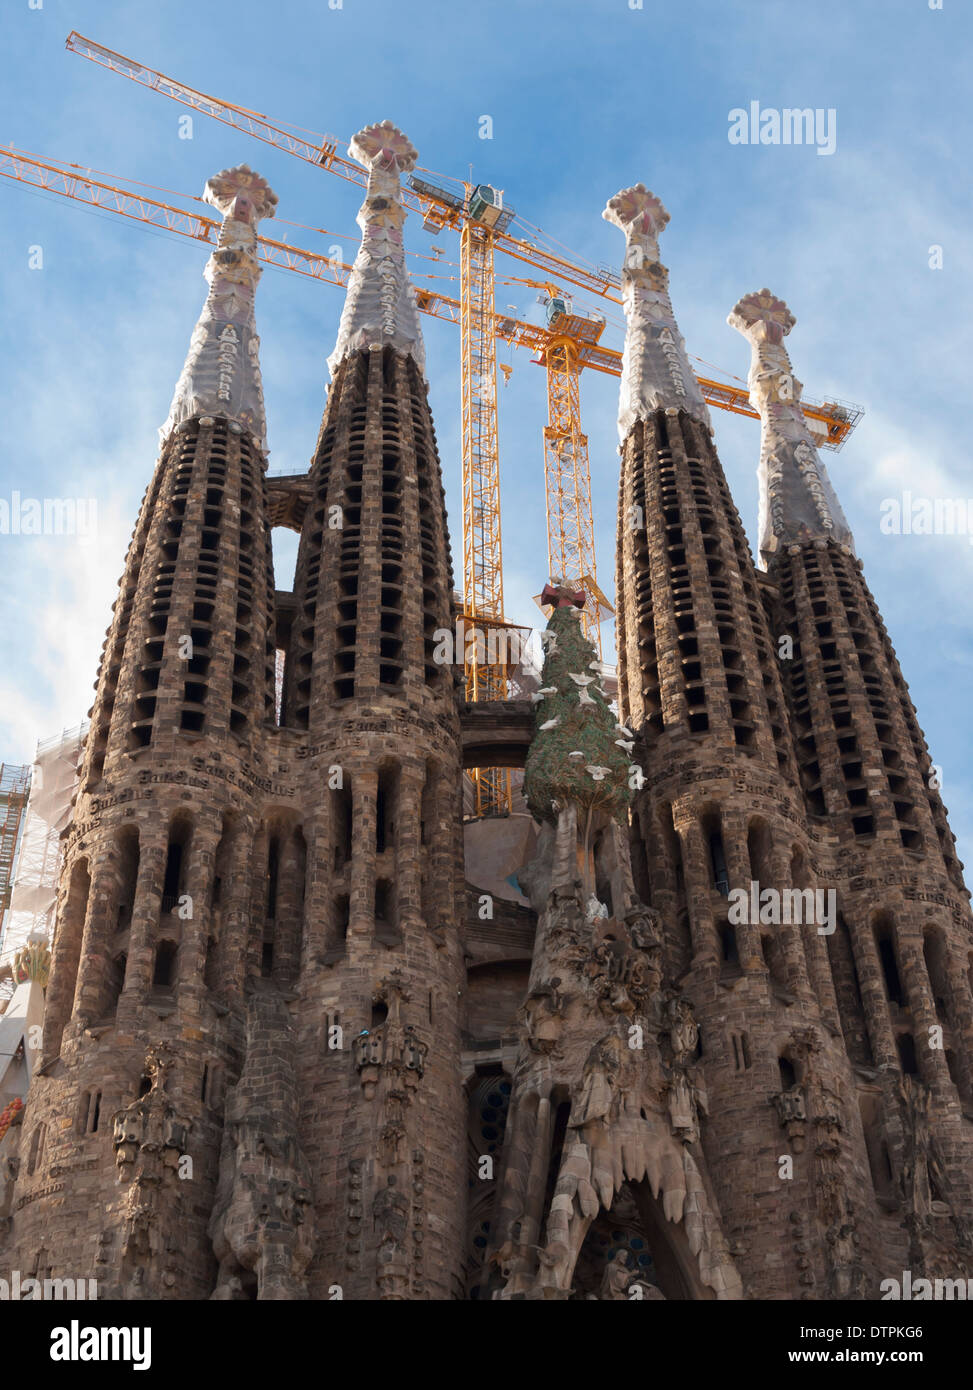 Constrution cranes at Antonio Gaudi's cathedral 